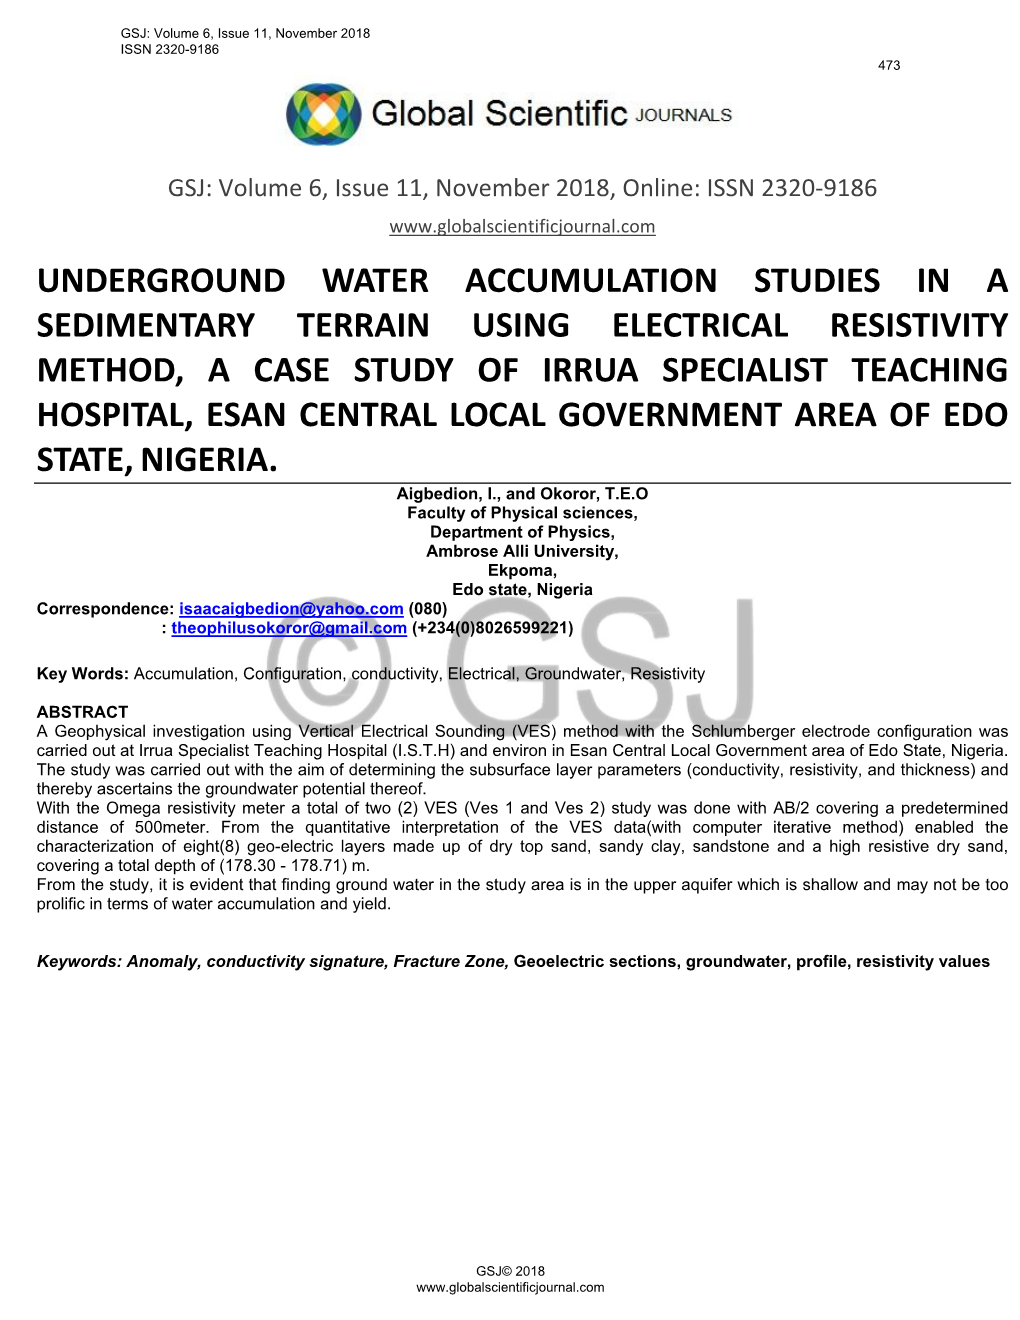 Underground Water Accumulation Studies in A